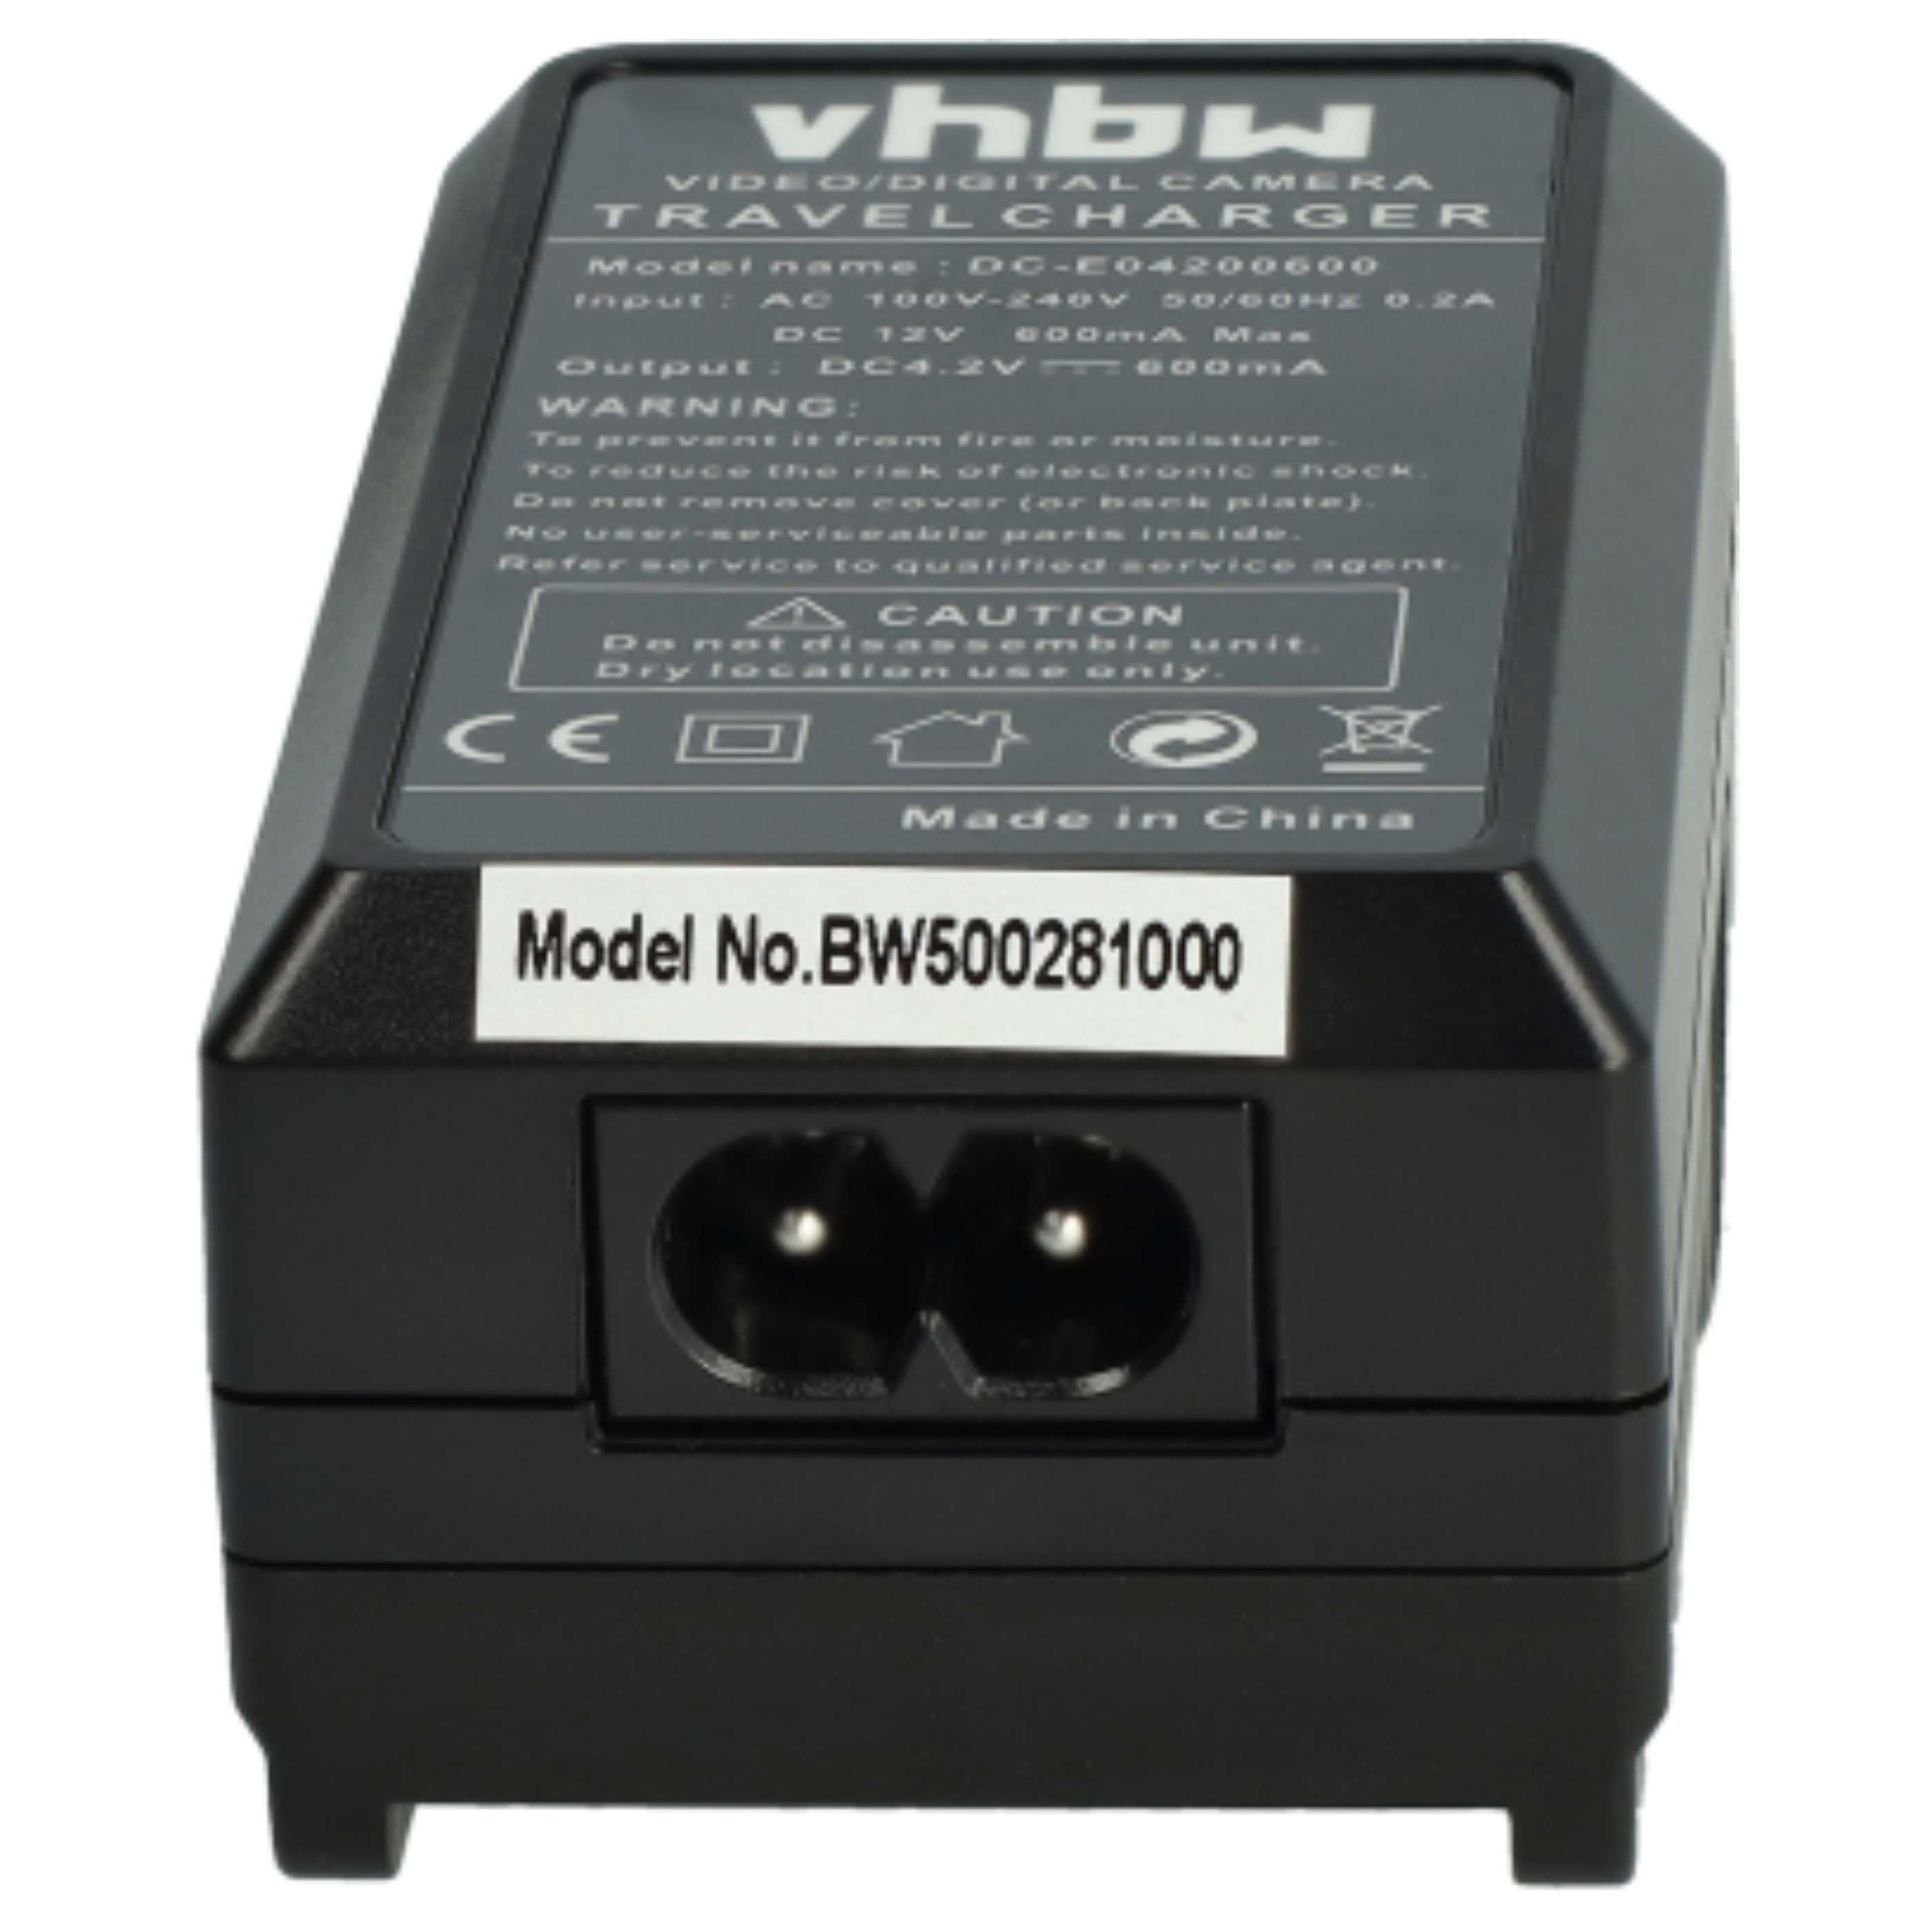 Chargeur pour appareil photo SDR-S26 